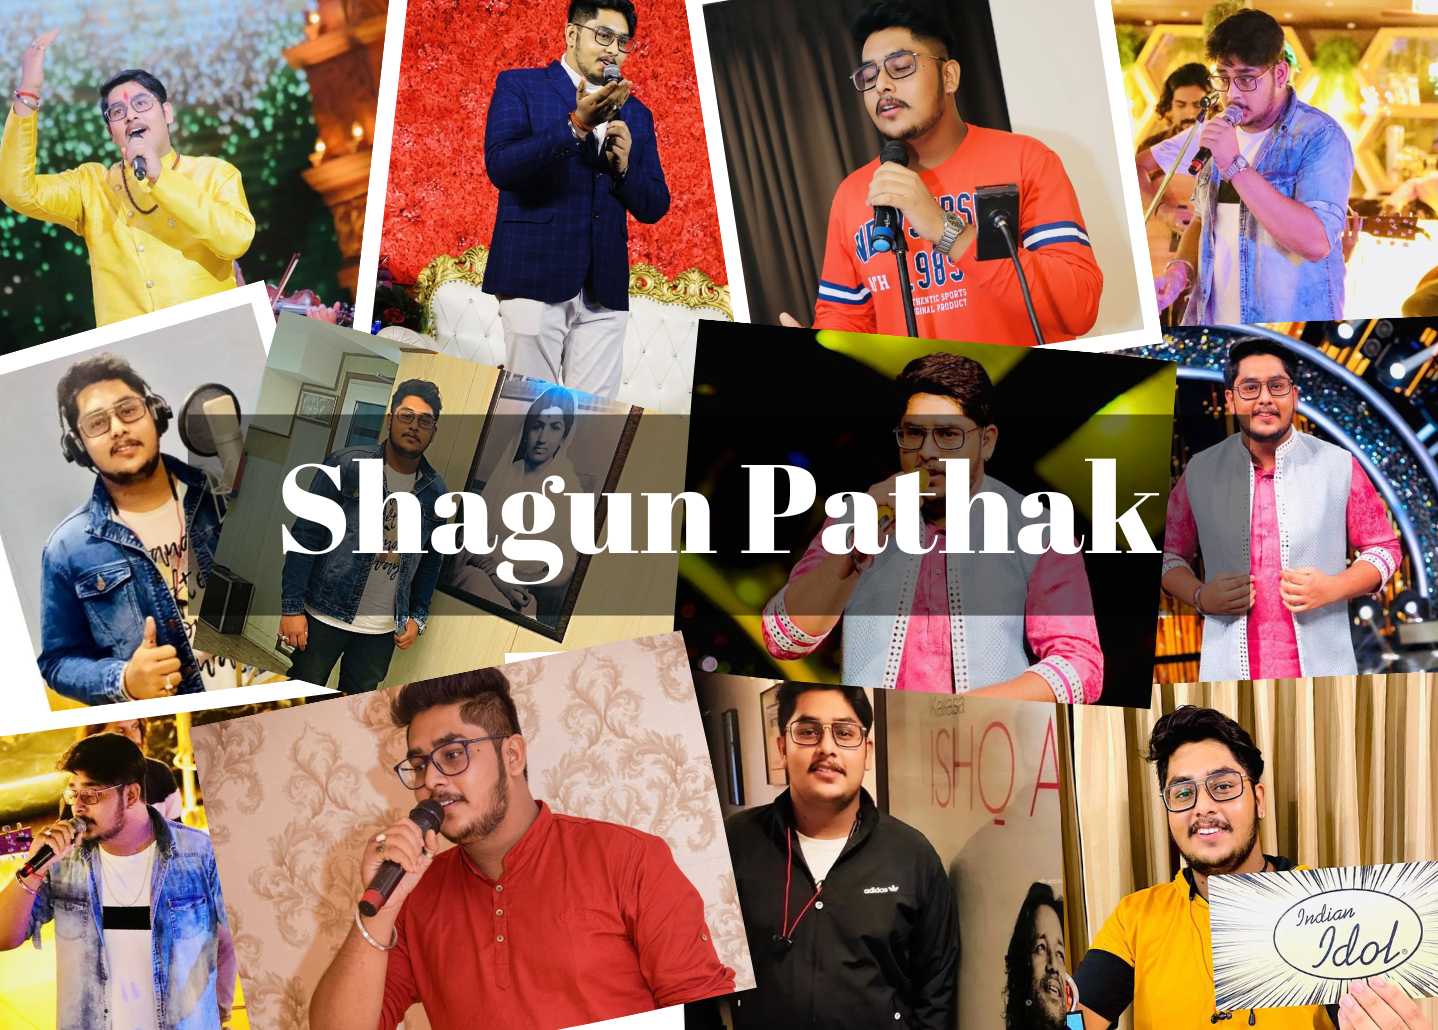 Shagun Pathak